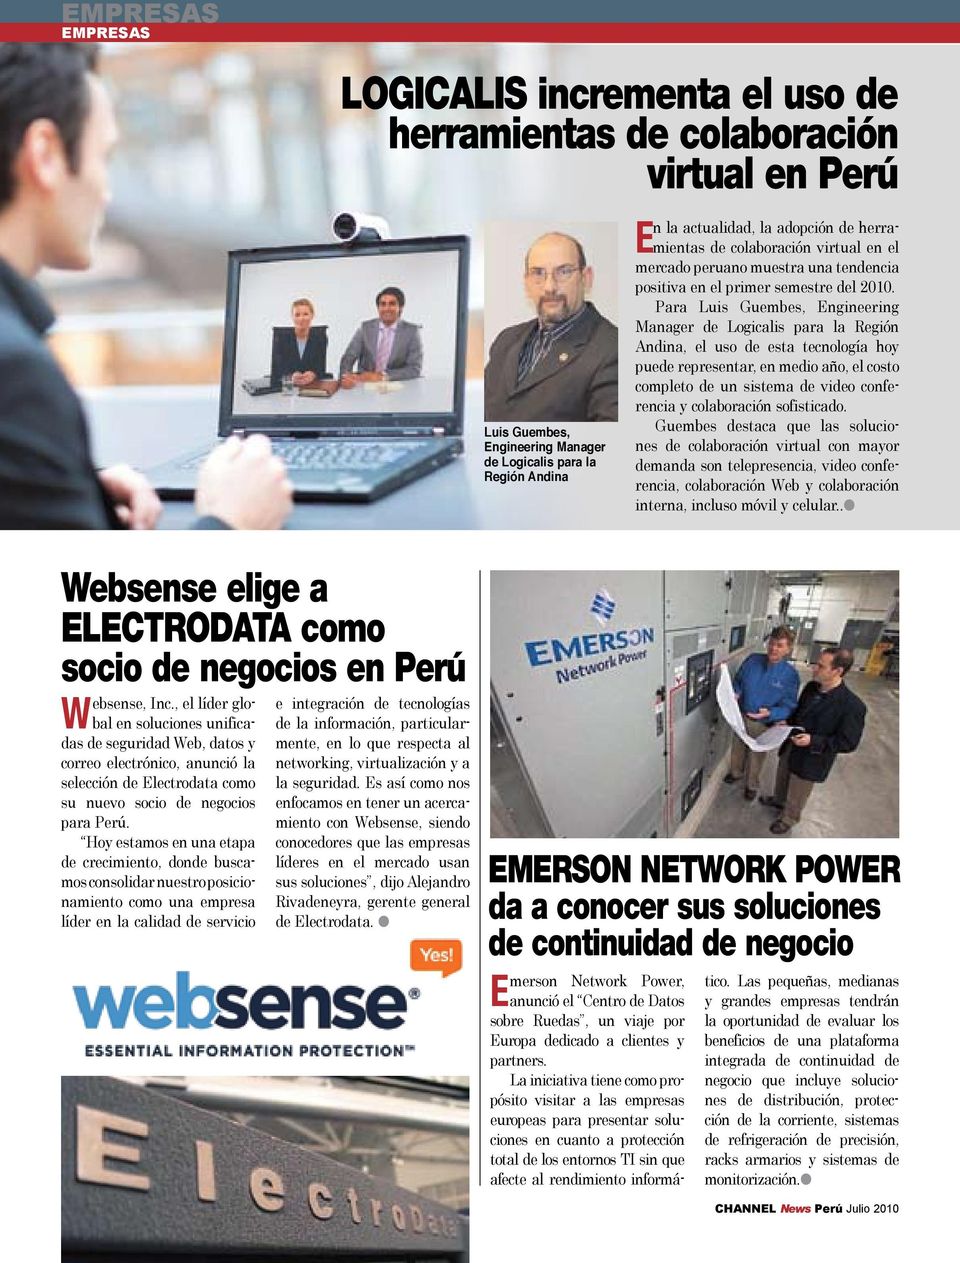 Para Luis Guembes, Engineering Manager de Logicalis para la Región Andina, el uso de esta tecnología hoy puede representar, en medio año, el costo completo de un sistema de video conferencia y